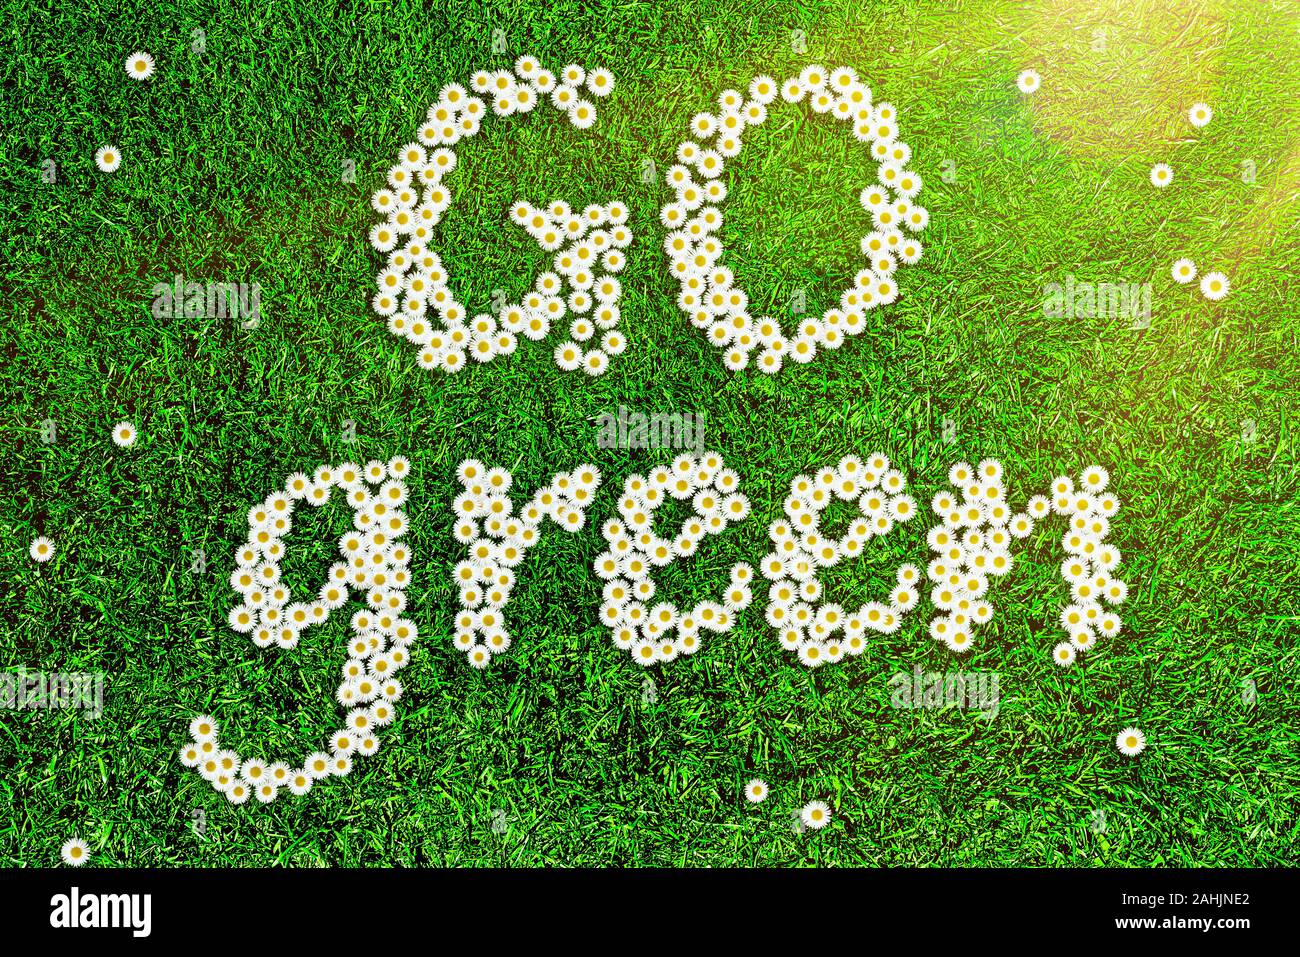 Blick von oben auf die Blumen Wörter bilden GRÜN auf grünem Gras, Ökologie Konzept Stockfoto